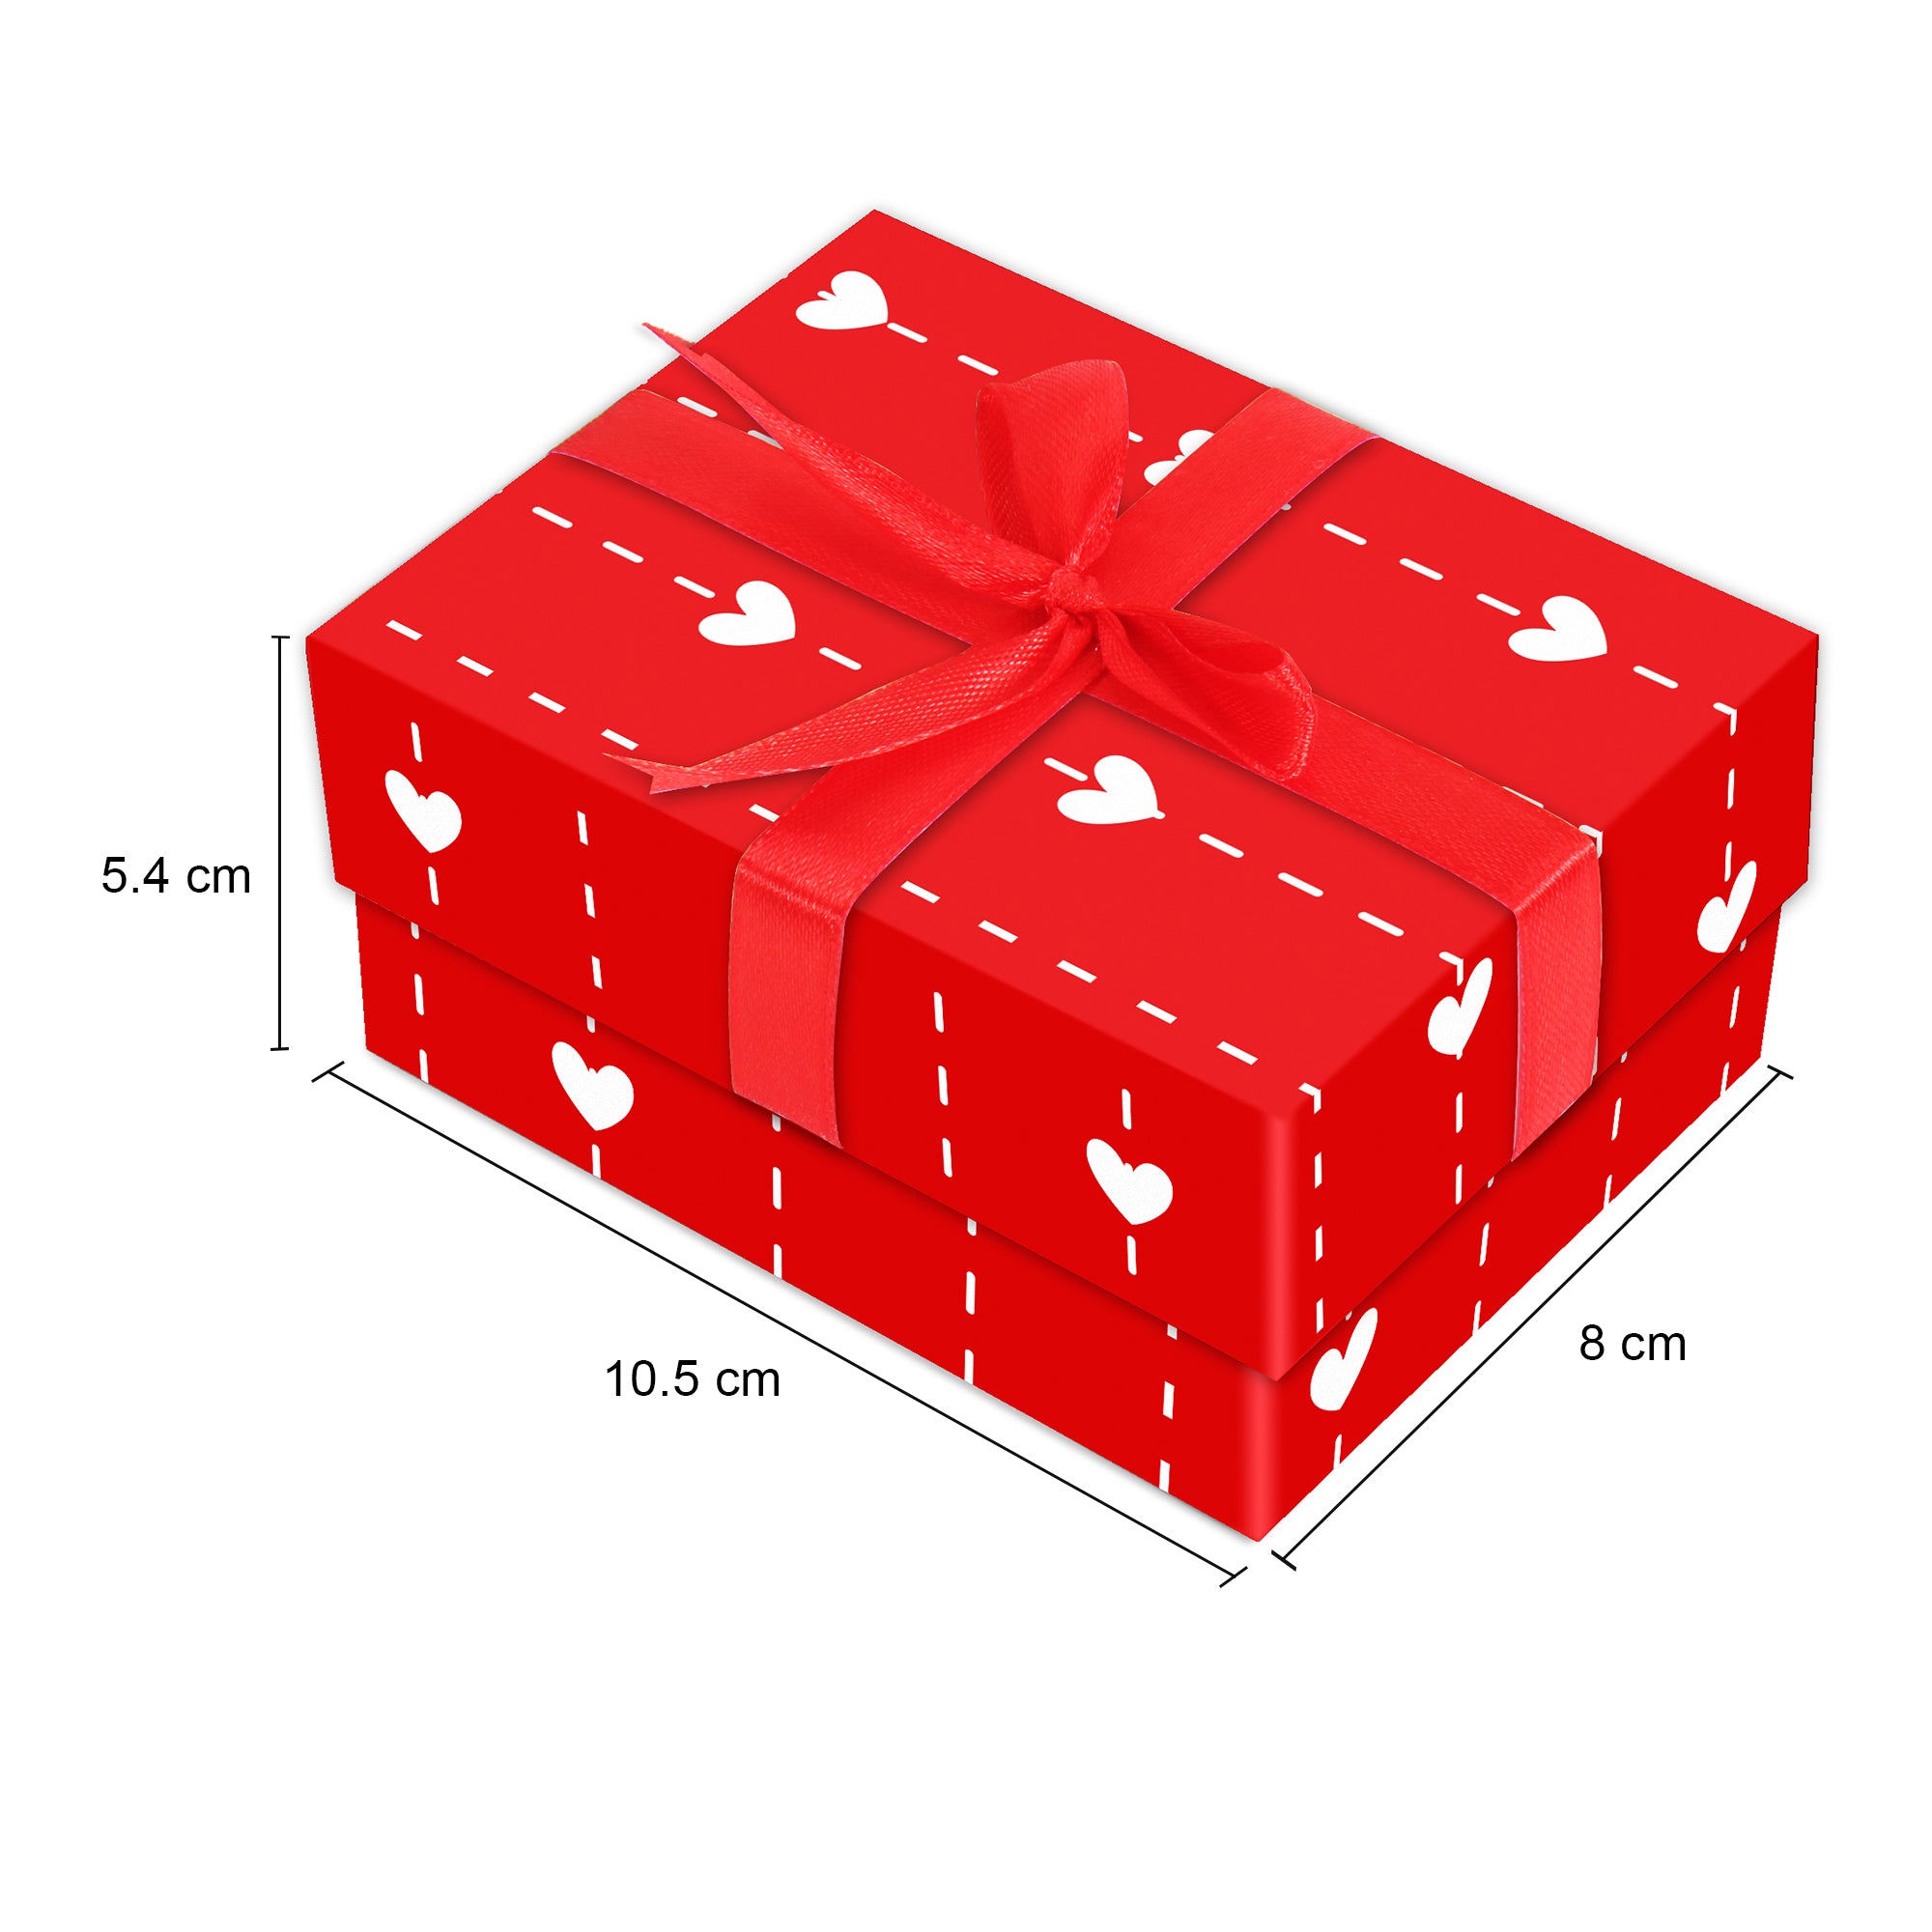 Gift Box Always Love With Bow L10.5 X W8 X D5.4Cm 1Pc Gol